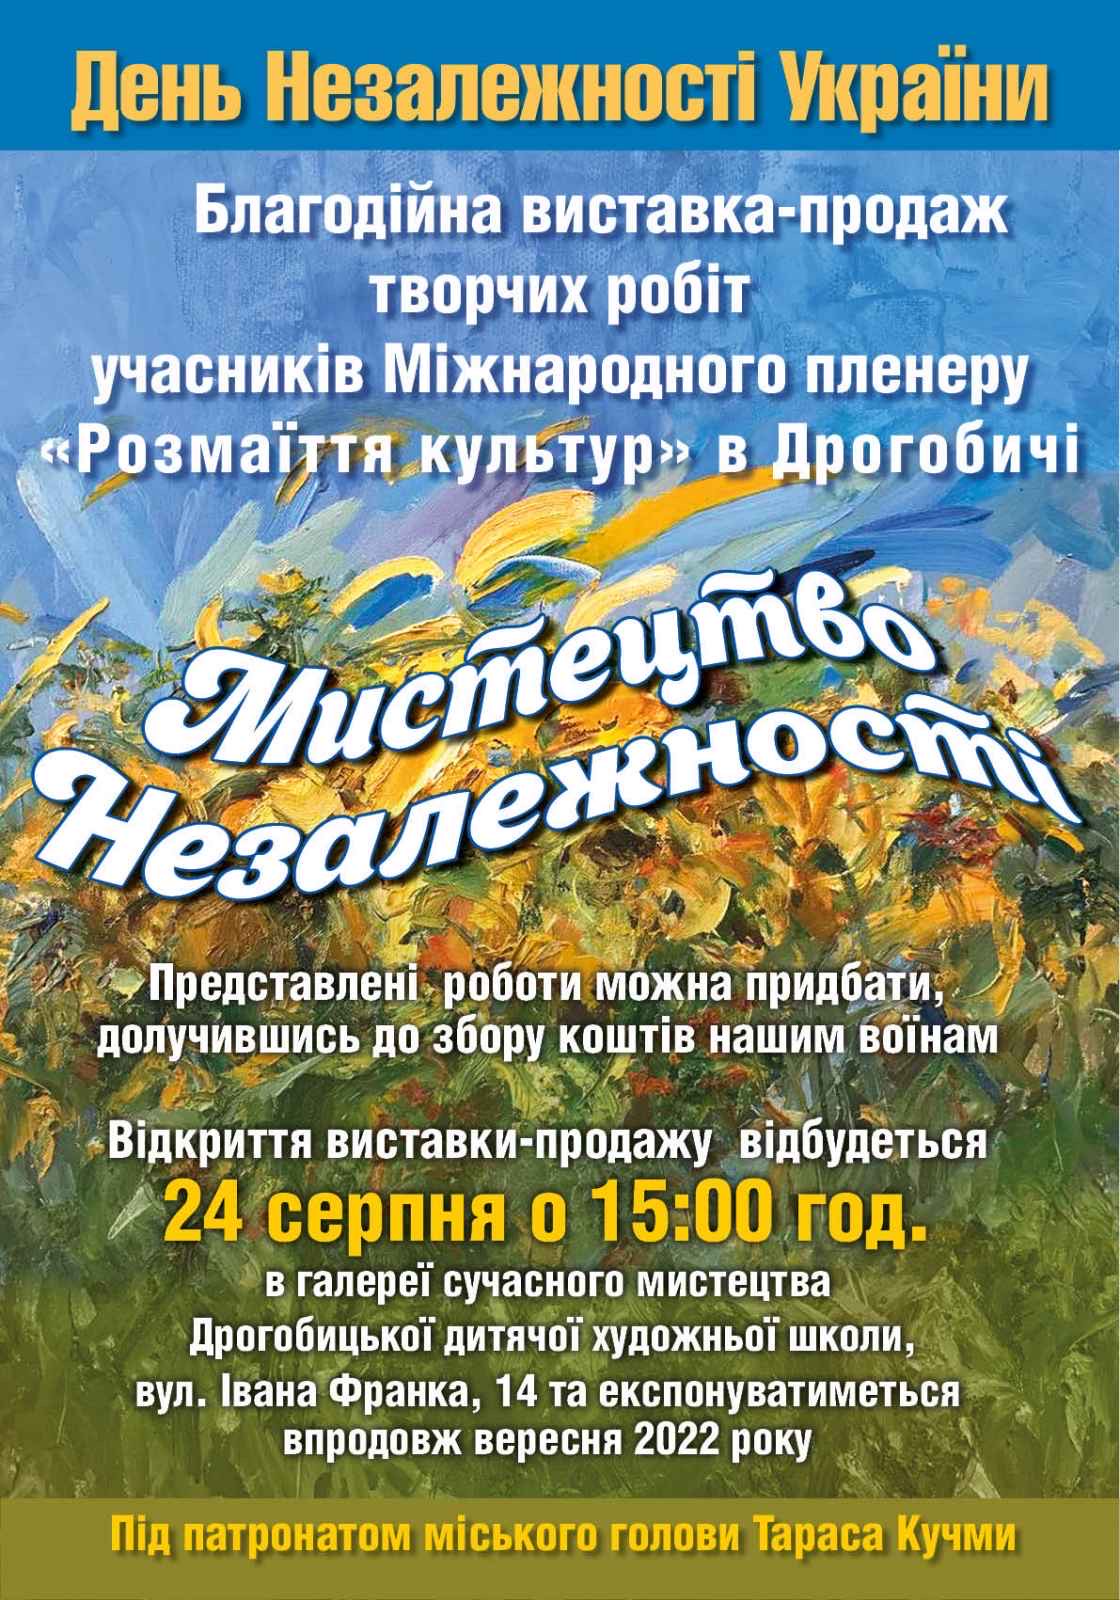 У День Незалежності у Дрогобичі відкриють благодійну виставку-продаж творчих  робіт учасників Міжнародного пленеру «Розмаїття культур»